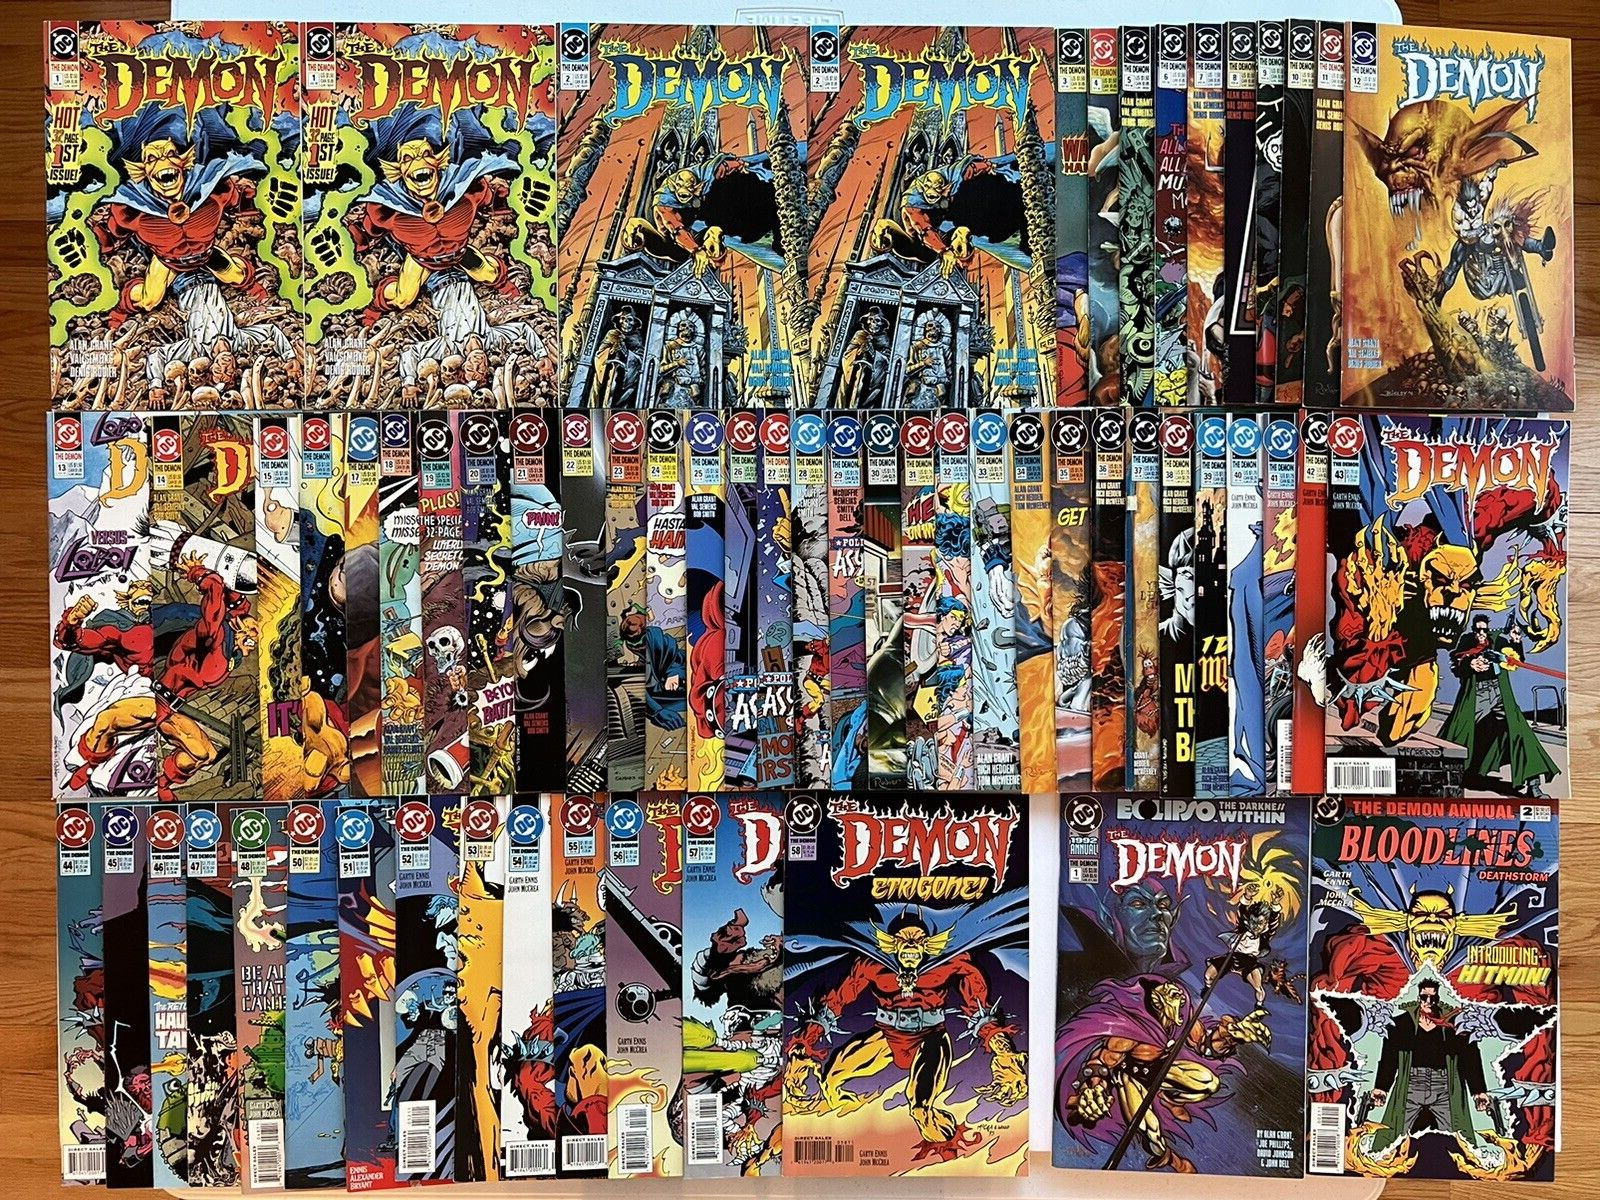 The Demon 1-58 + Annual 1 & 2 - DC 1990 V3 -Full Run Lot (exc #0 & 49) Lobo - VG